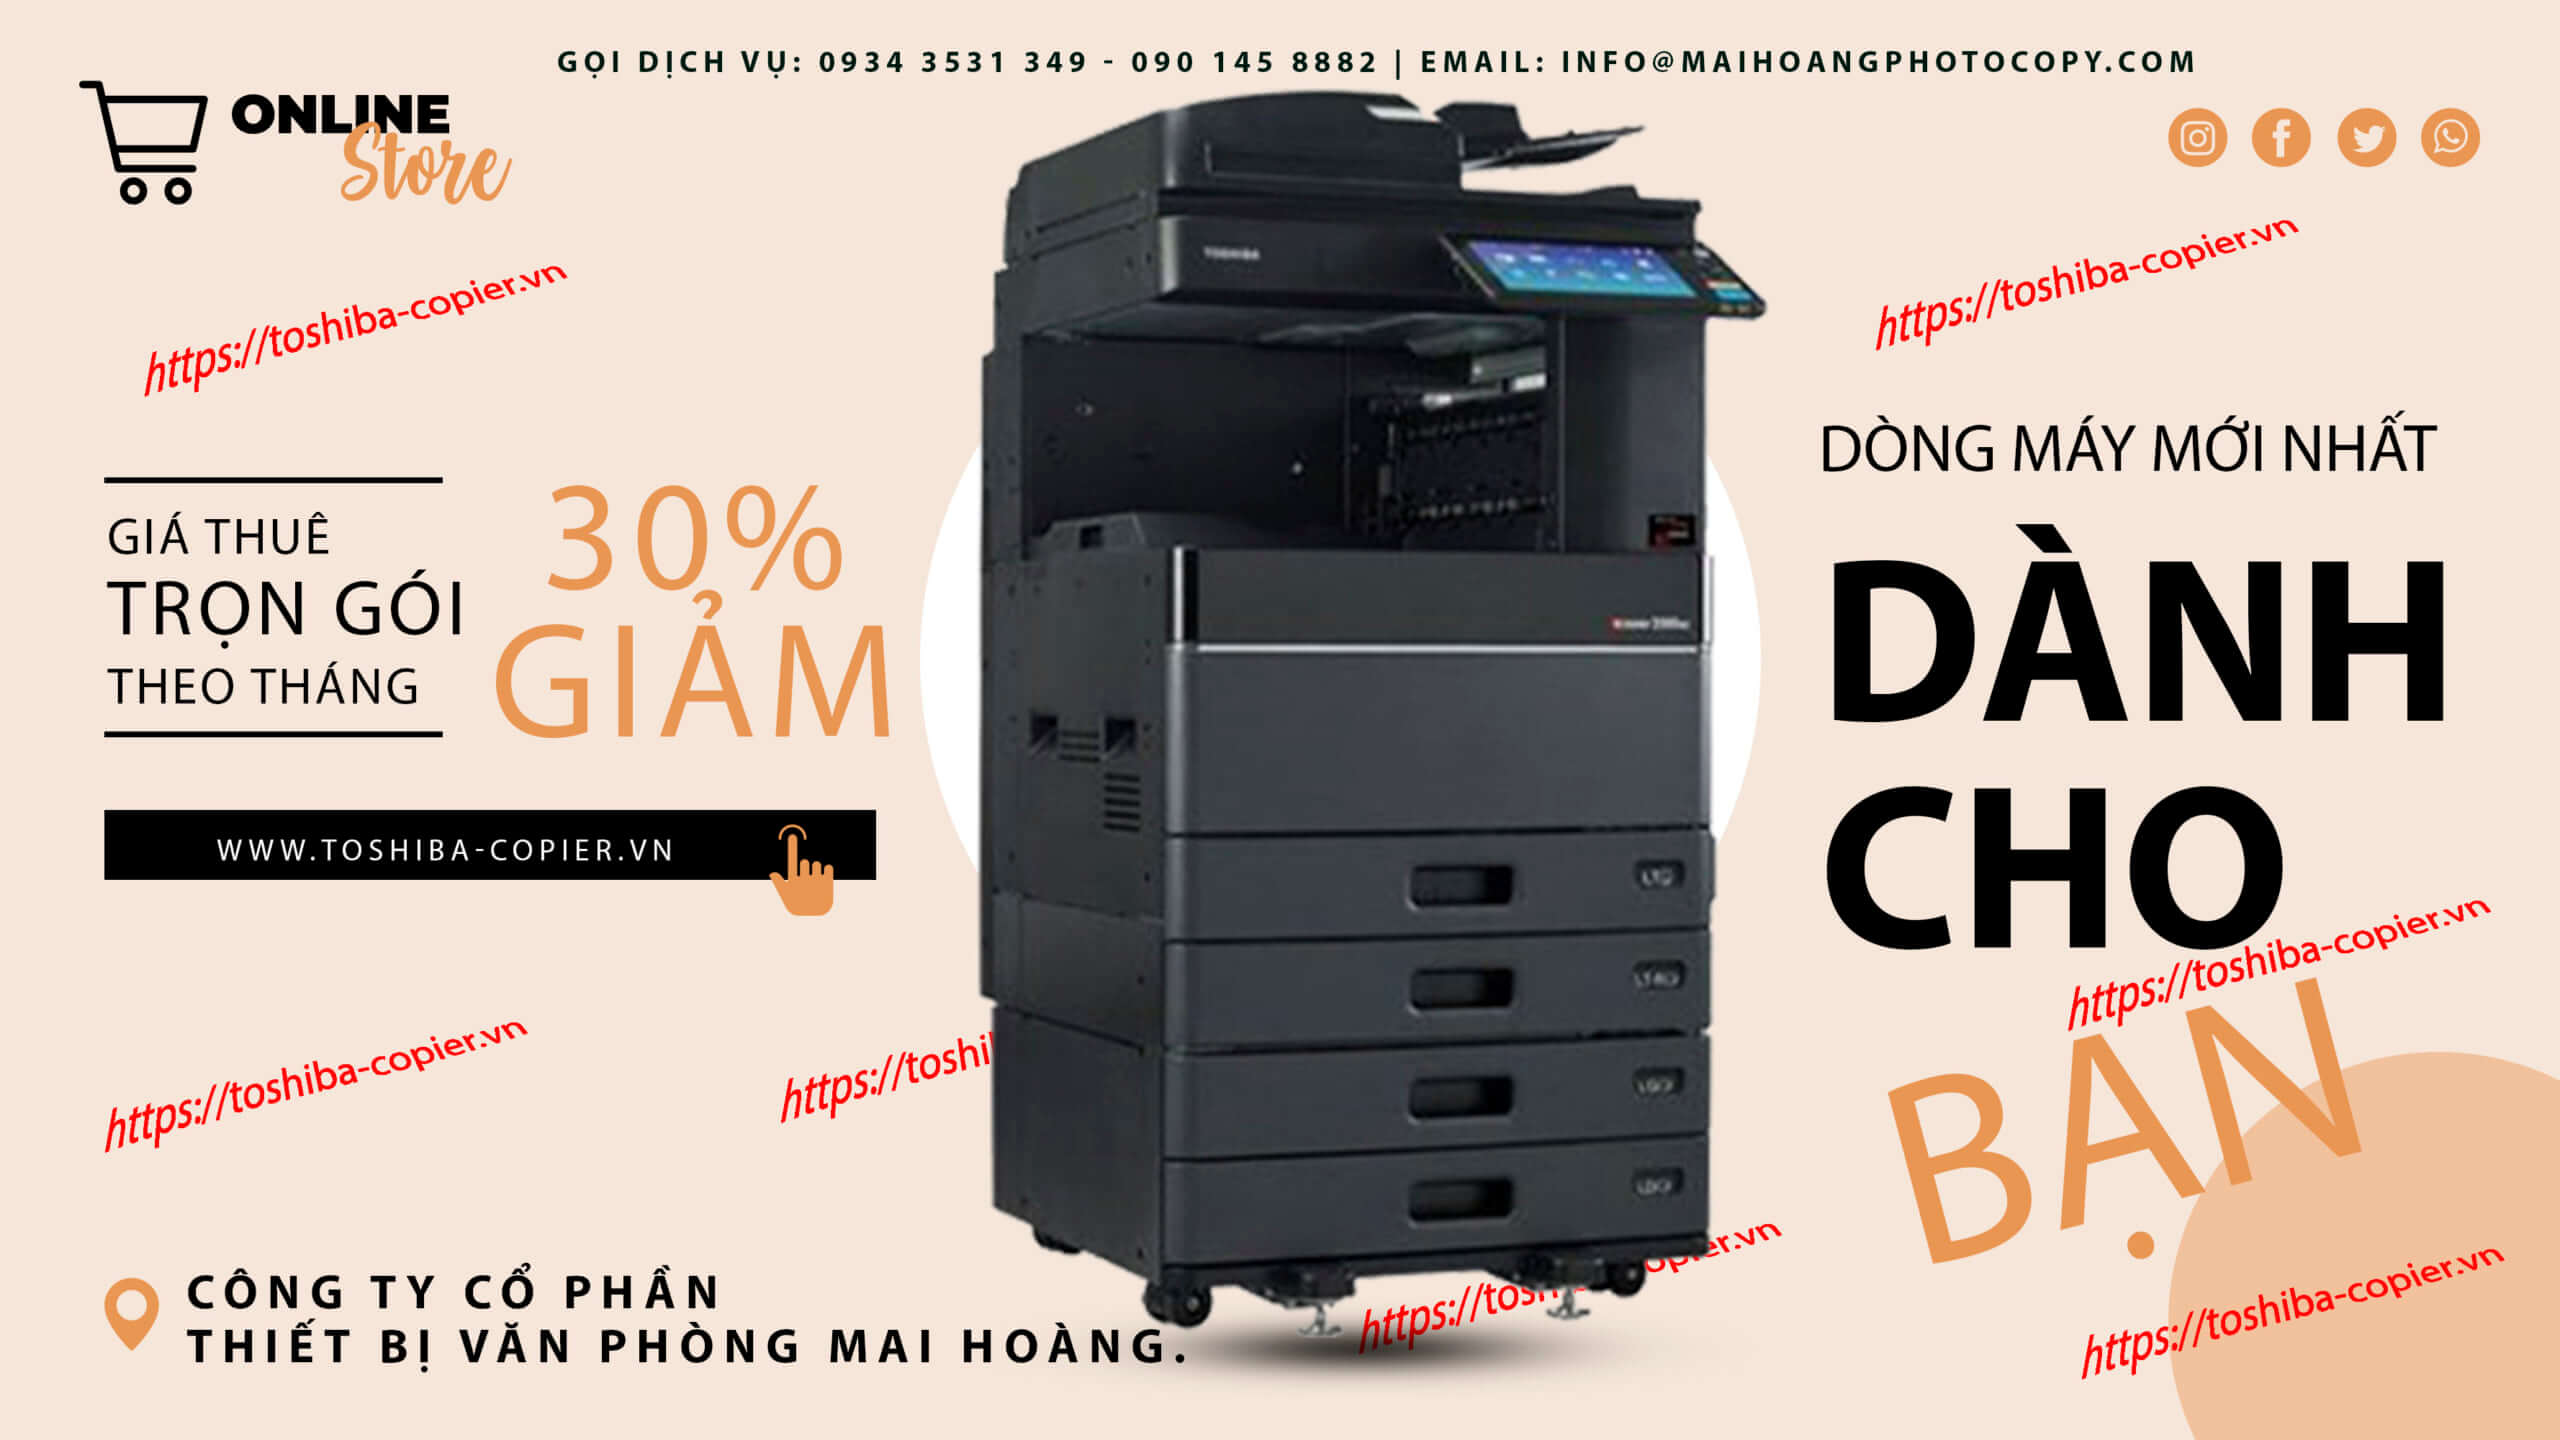 cho thuê máy photocopy toshiba Toshiba khi sở hữu hộp mực to nên thời gian sử dụng liên tục lâu dài nên rất thích hợp sử dụng trong các cửa hàng kinh doanh dịch vụ photocopy.